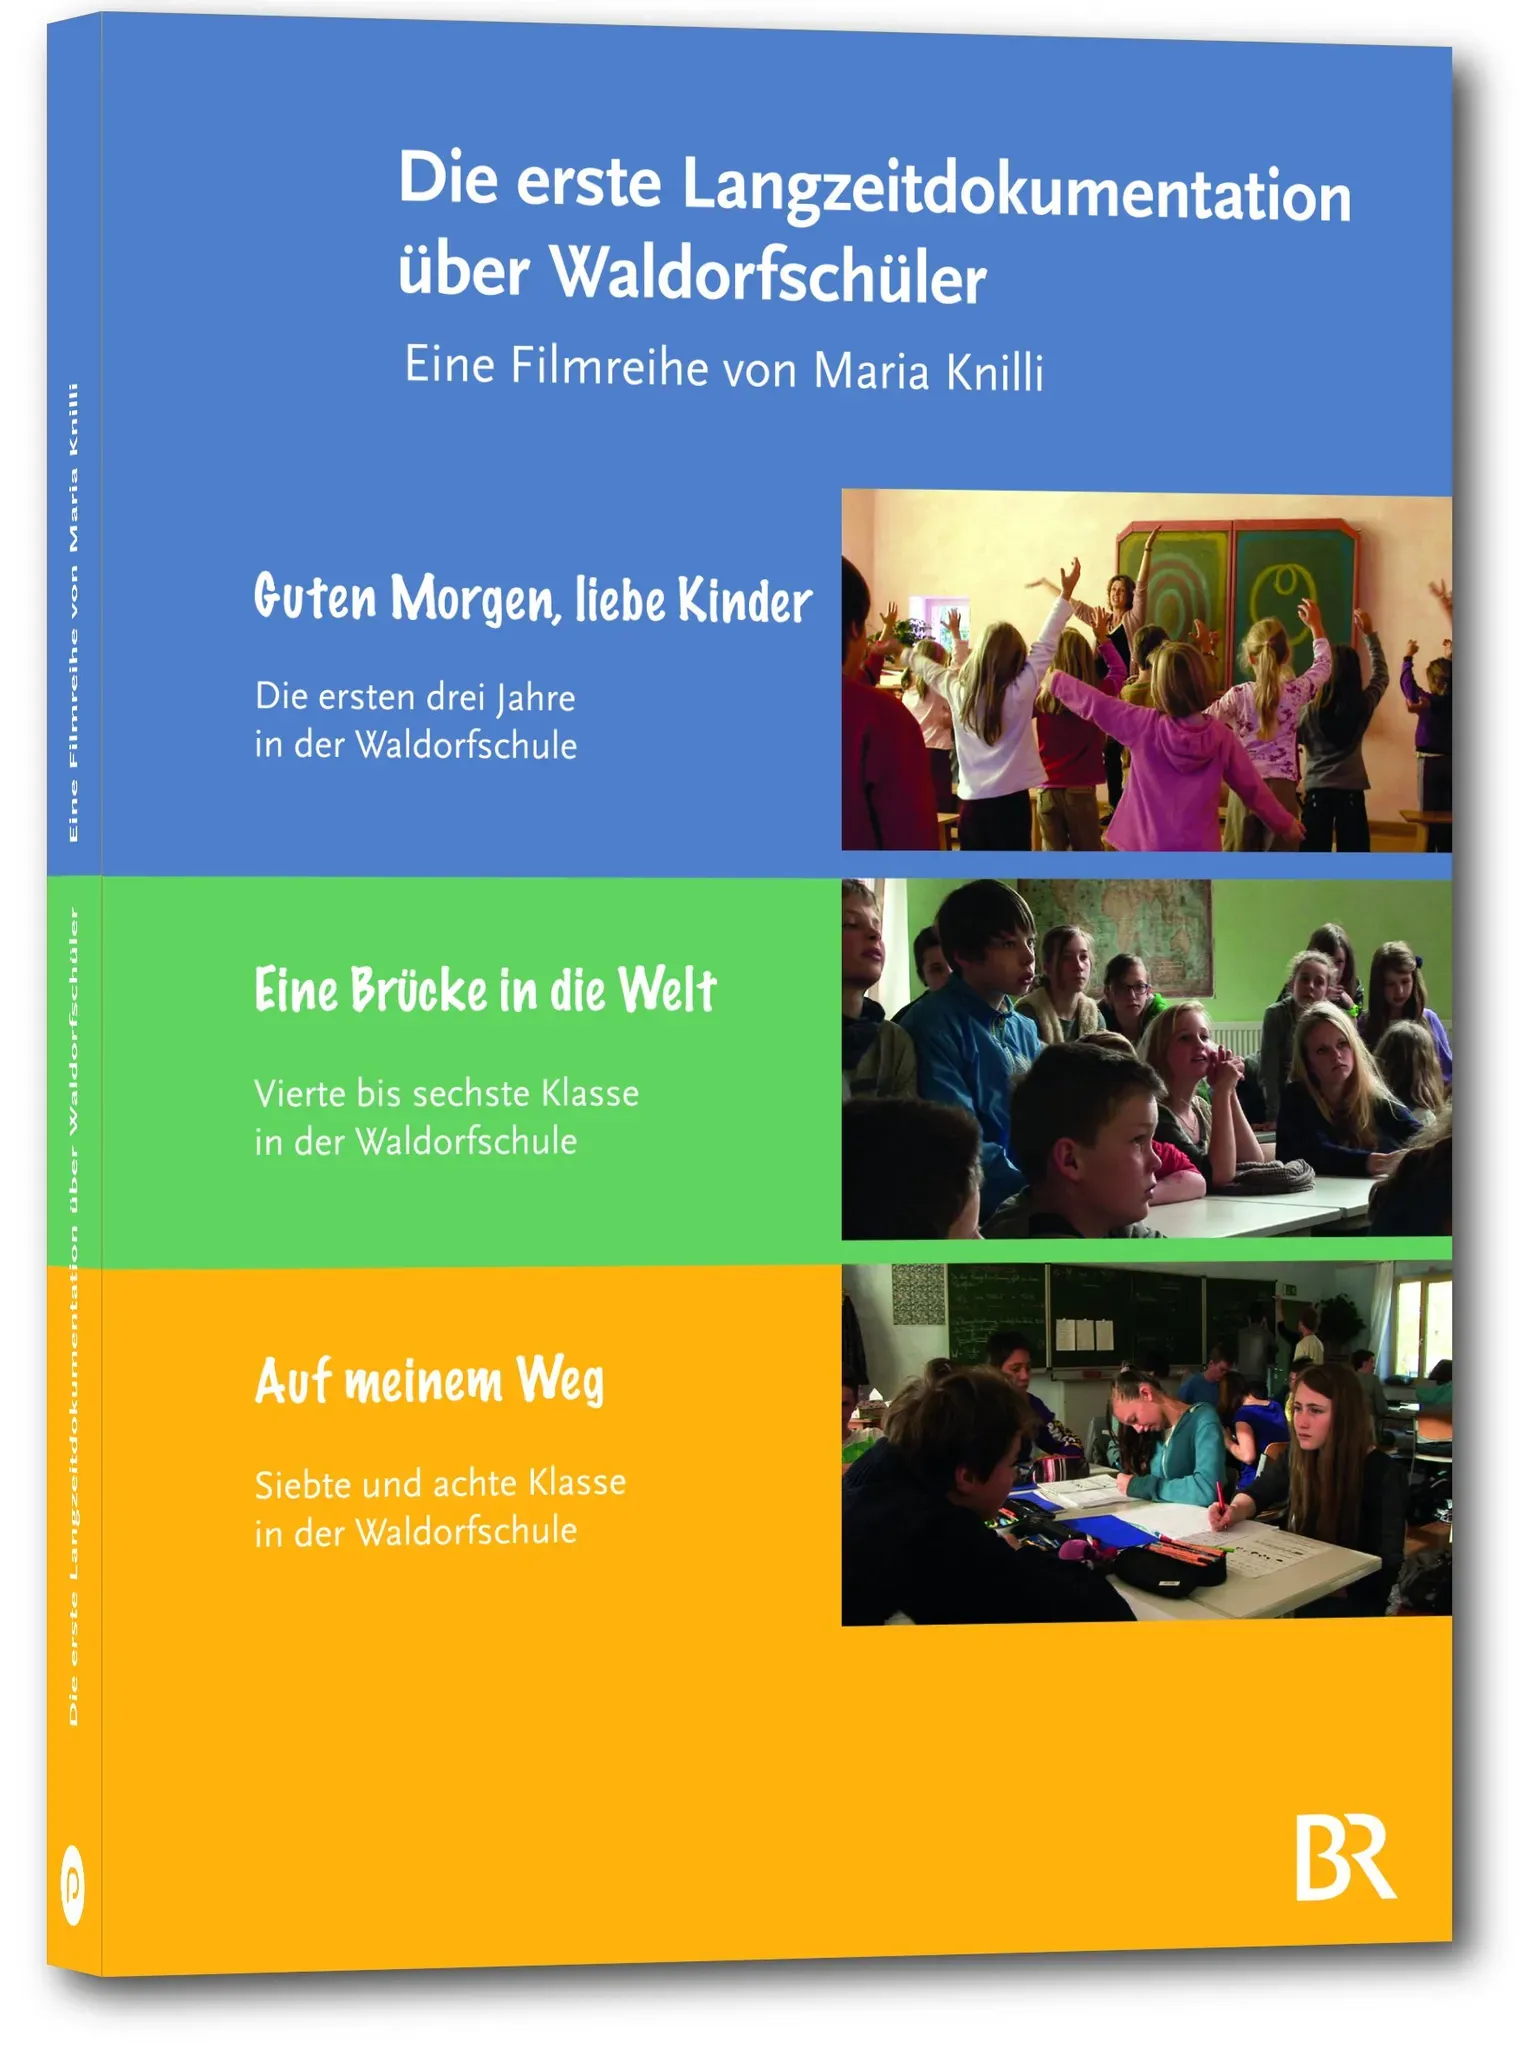 Die erste Langzeitdokumentation über Waldorfschüler - Von der ersten bis zur achten Klasse(3DVDs) (Neu differenzbesteuert)